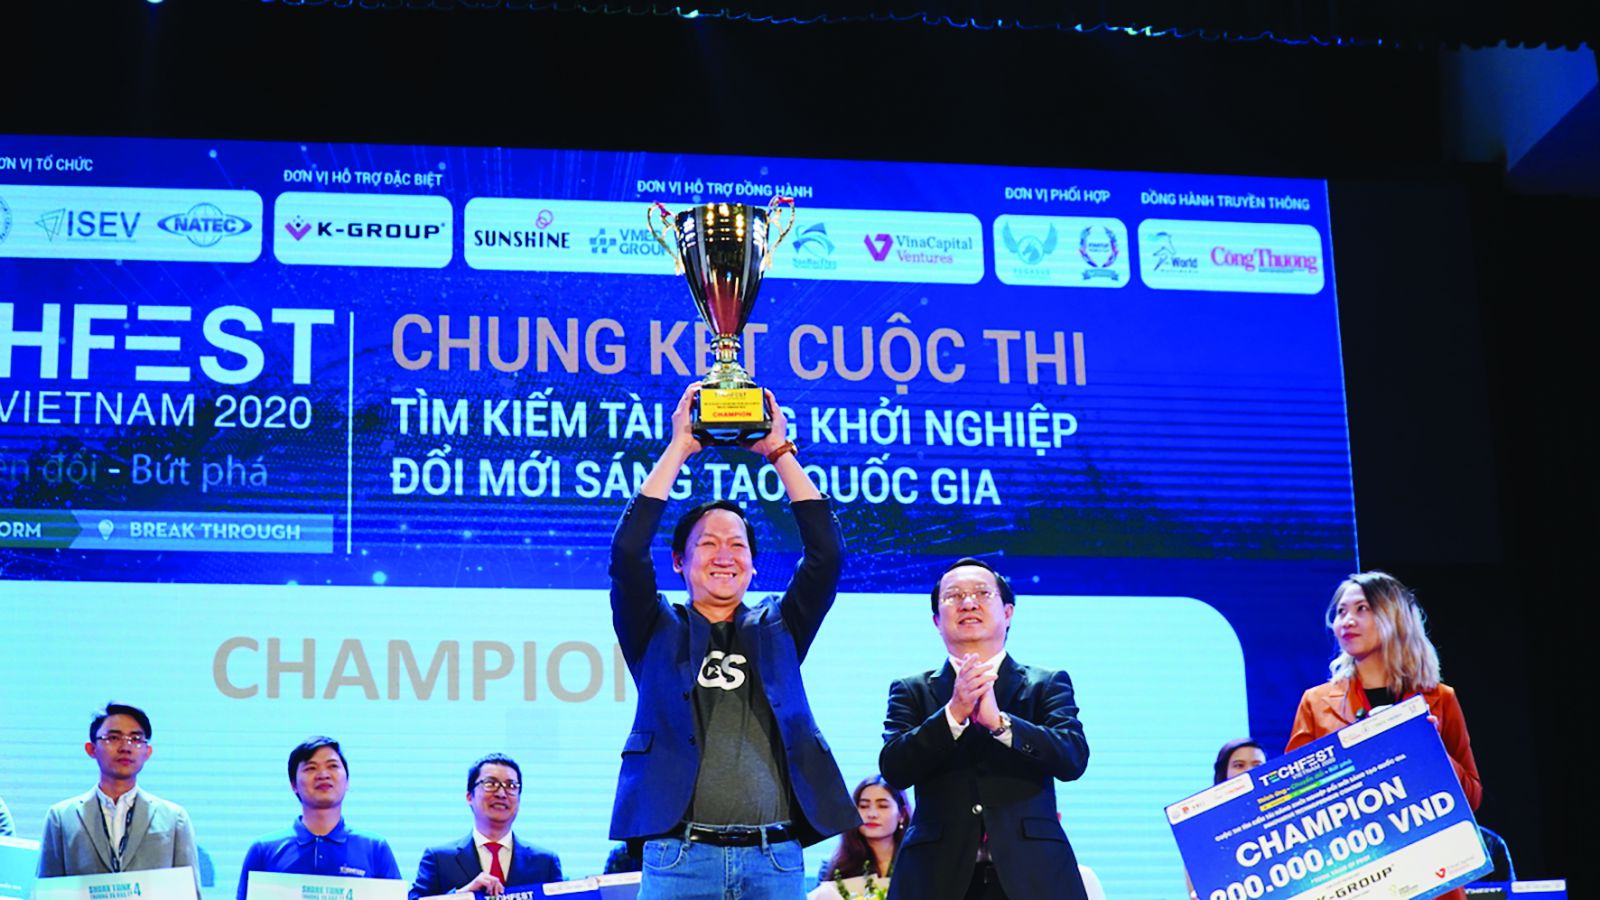  Bộ trưởng Bộ KH&CN trao cúp giải nhất cho đội Công ty cổ phần Gostream Technology tại Cuộc thi Tìm kiếm tài năng khởi nghiệp đổi mới sáng tạo quốc gia